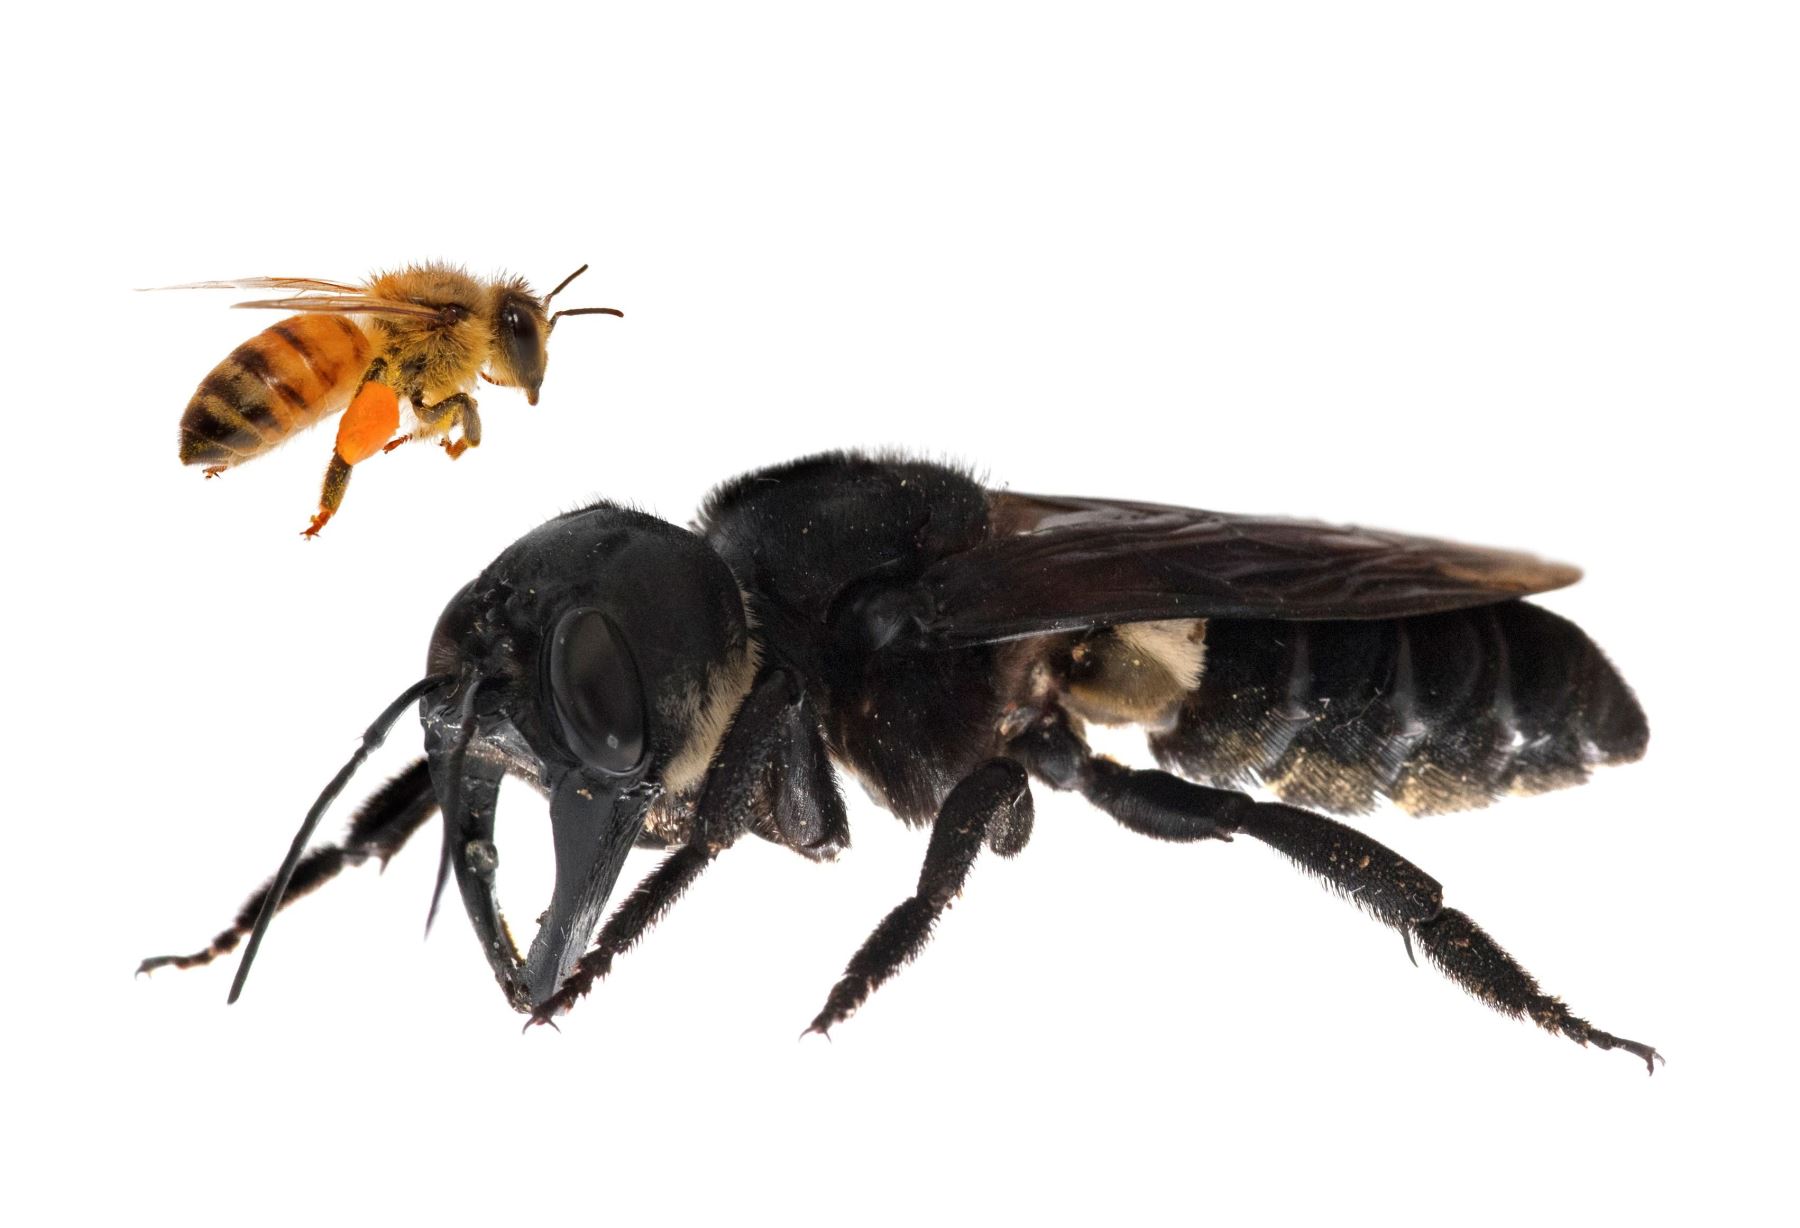 Composición fotográfica facilitada por Global Wildlife Conservation de un ejemplar "Megachile pluto", la abeja más grande del mundo. Foto: EFE